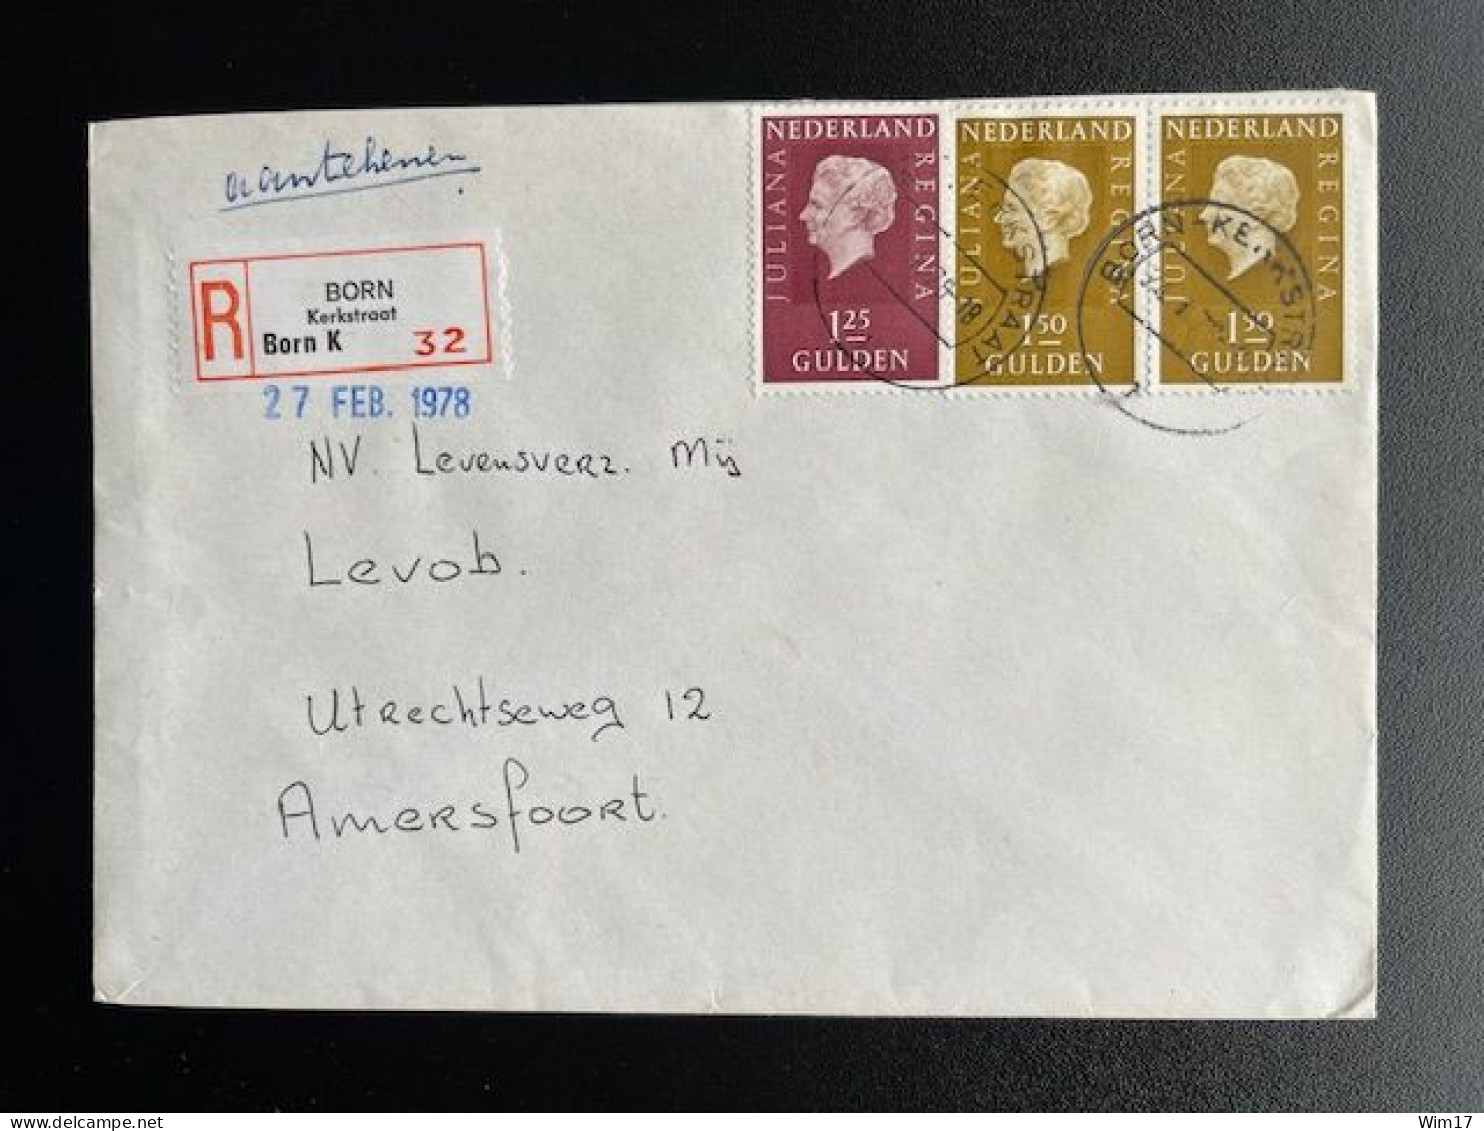 NETHERLANDS 1978 REGISTERED LETTER BORN KERKSTRAAT TO AMERSFOORT 24-02-1978 NEDERLAND AANGETEKEND - Lettres & Documents